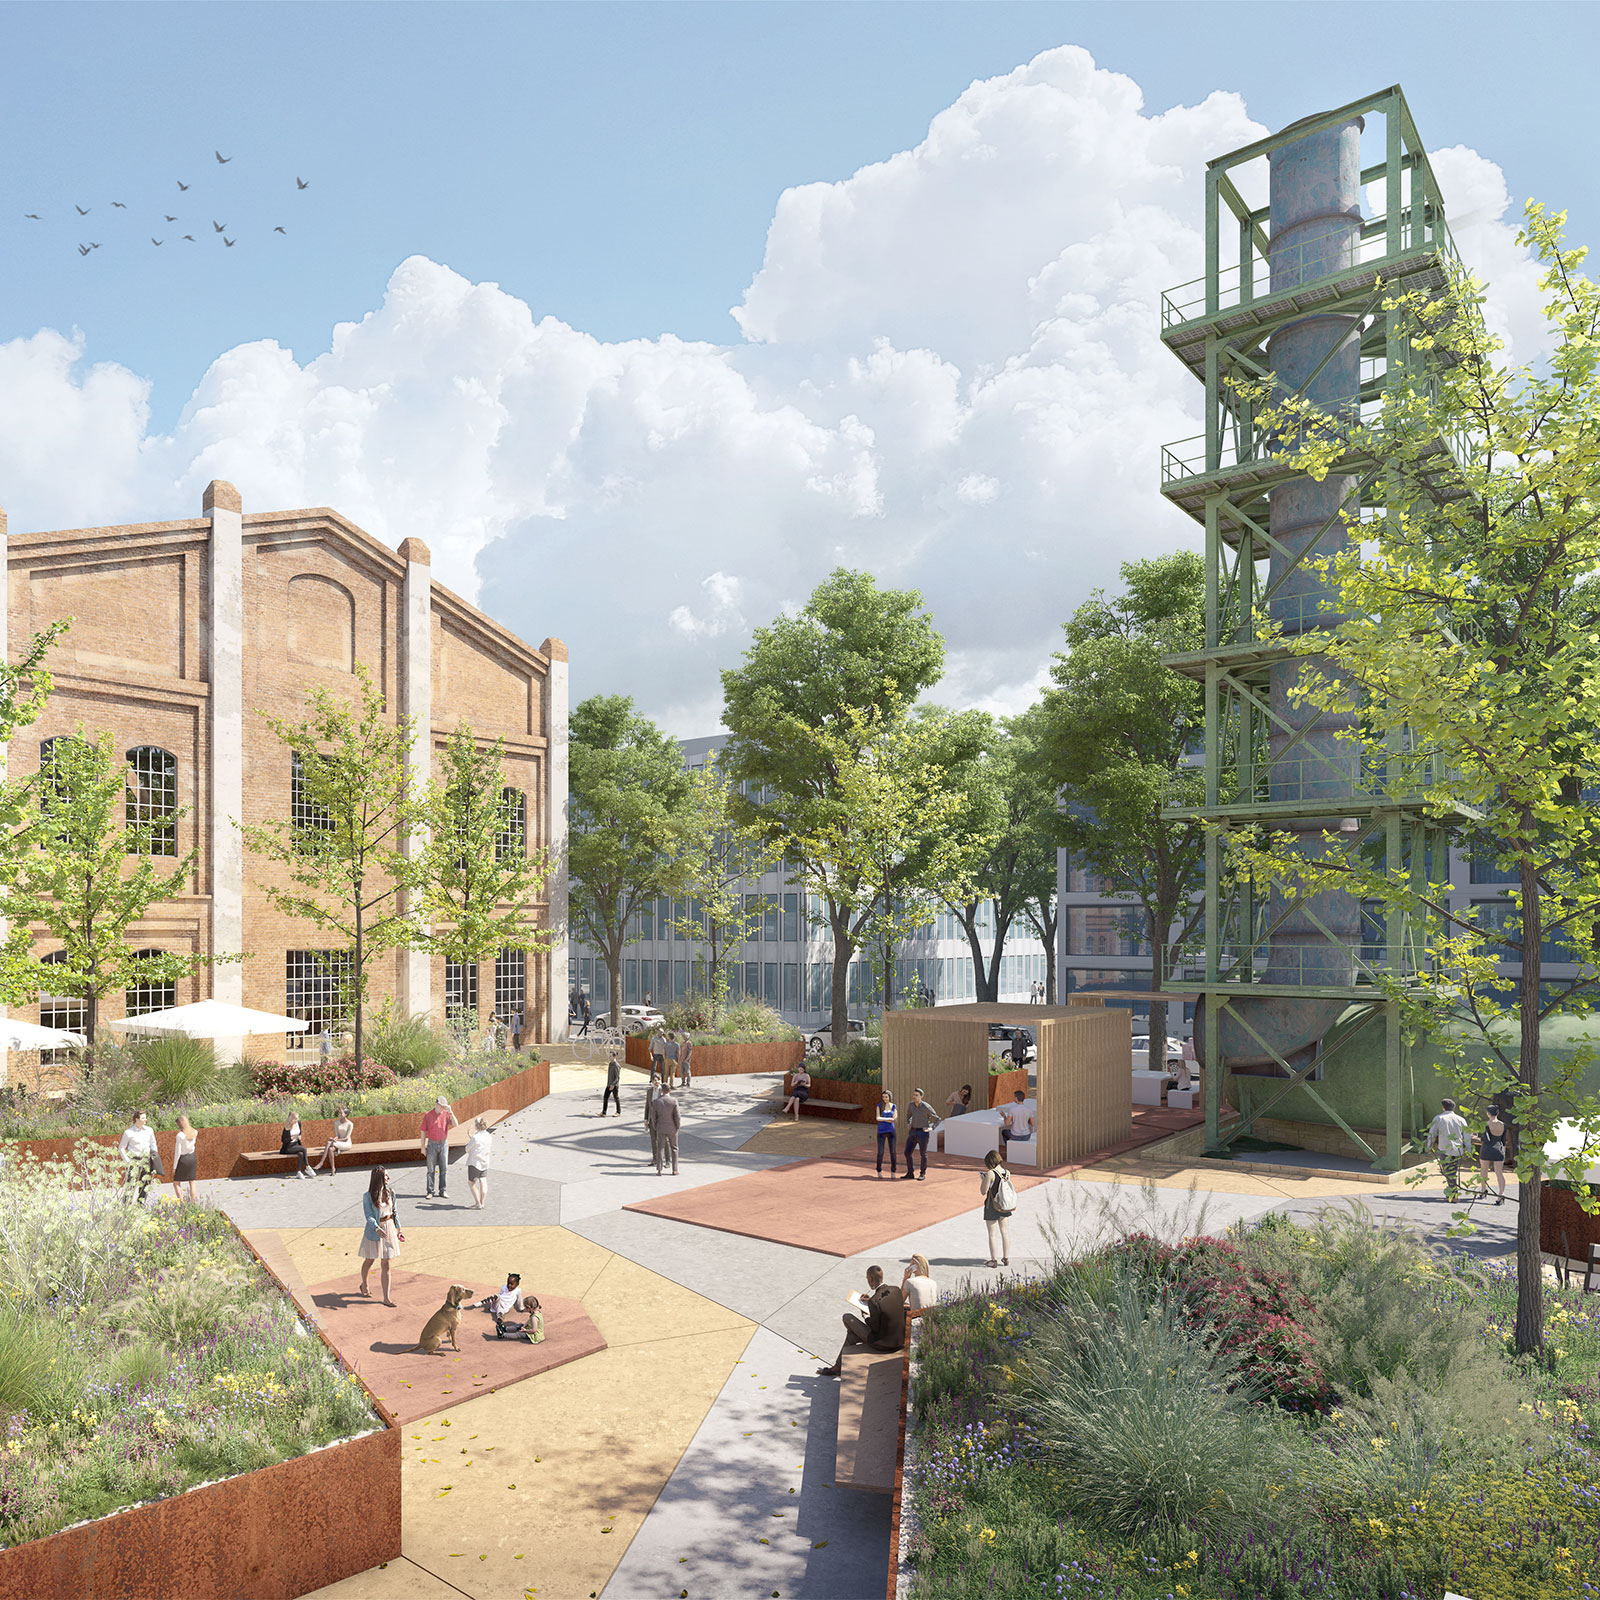 Visualisierung eines zukünftigen Quartiersplatzes der FRANKFURT WESTSIDE mit einem Bestandsgebäude, Relikten der Industriegeschichte, einem Coworking-Space und einem hohen Anteil an Vegetation.